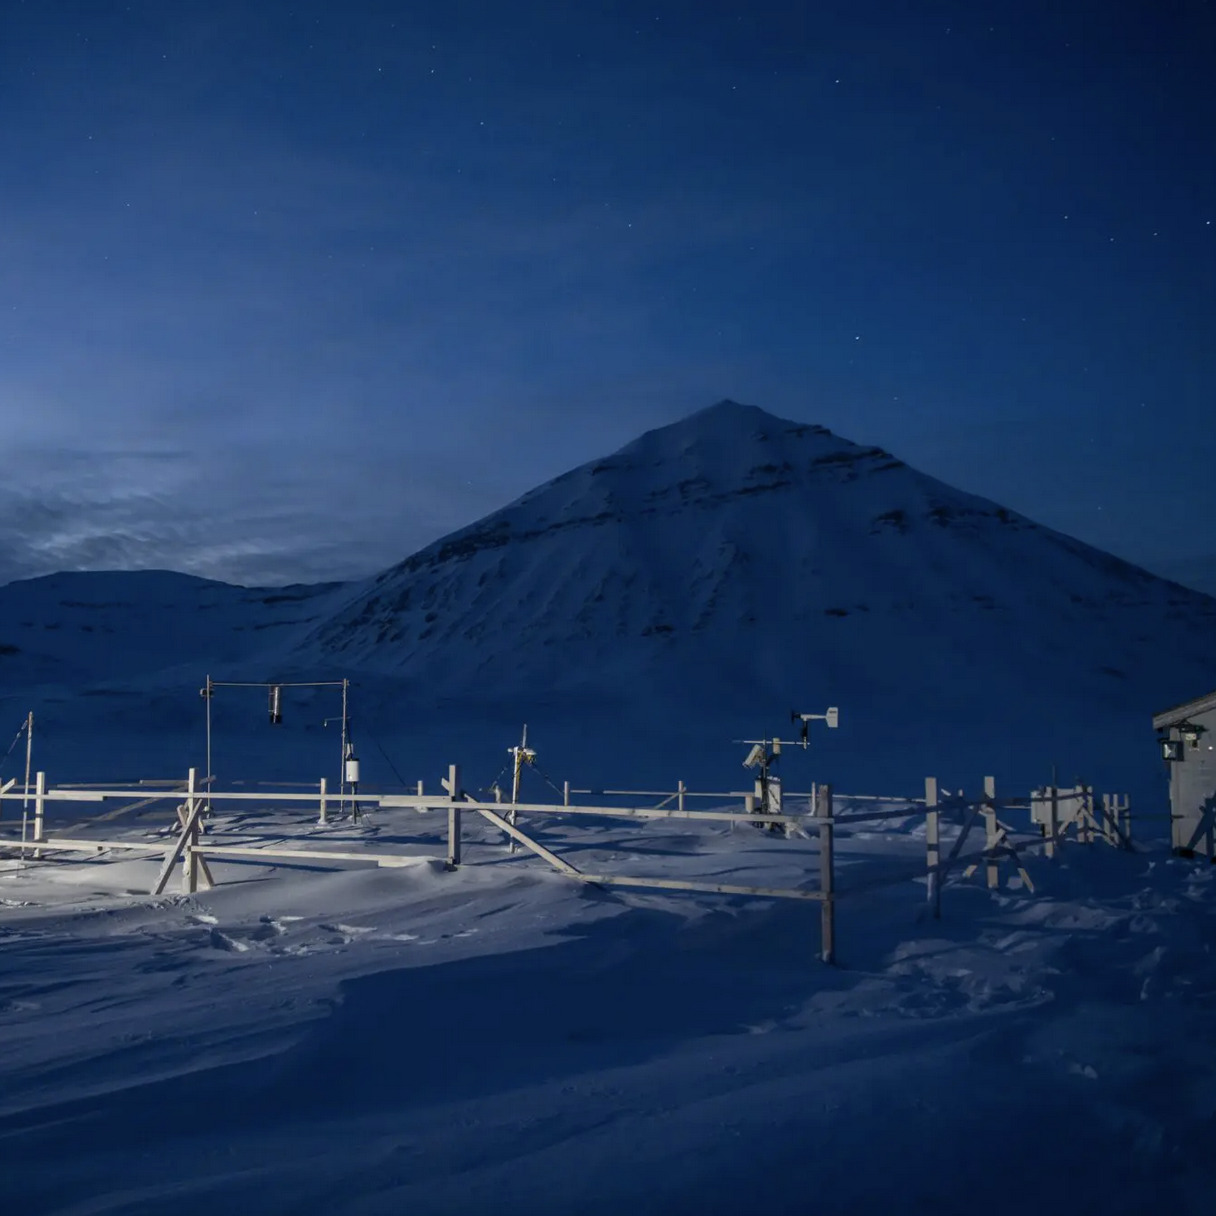 Snötäckt forskningsstation en polarnatt. Mätverktyg i förgrunden och berg i bakgrunden.